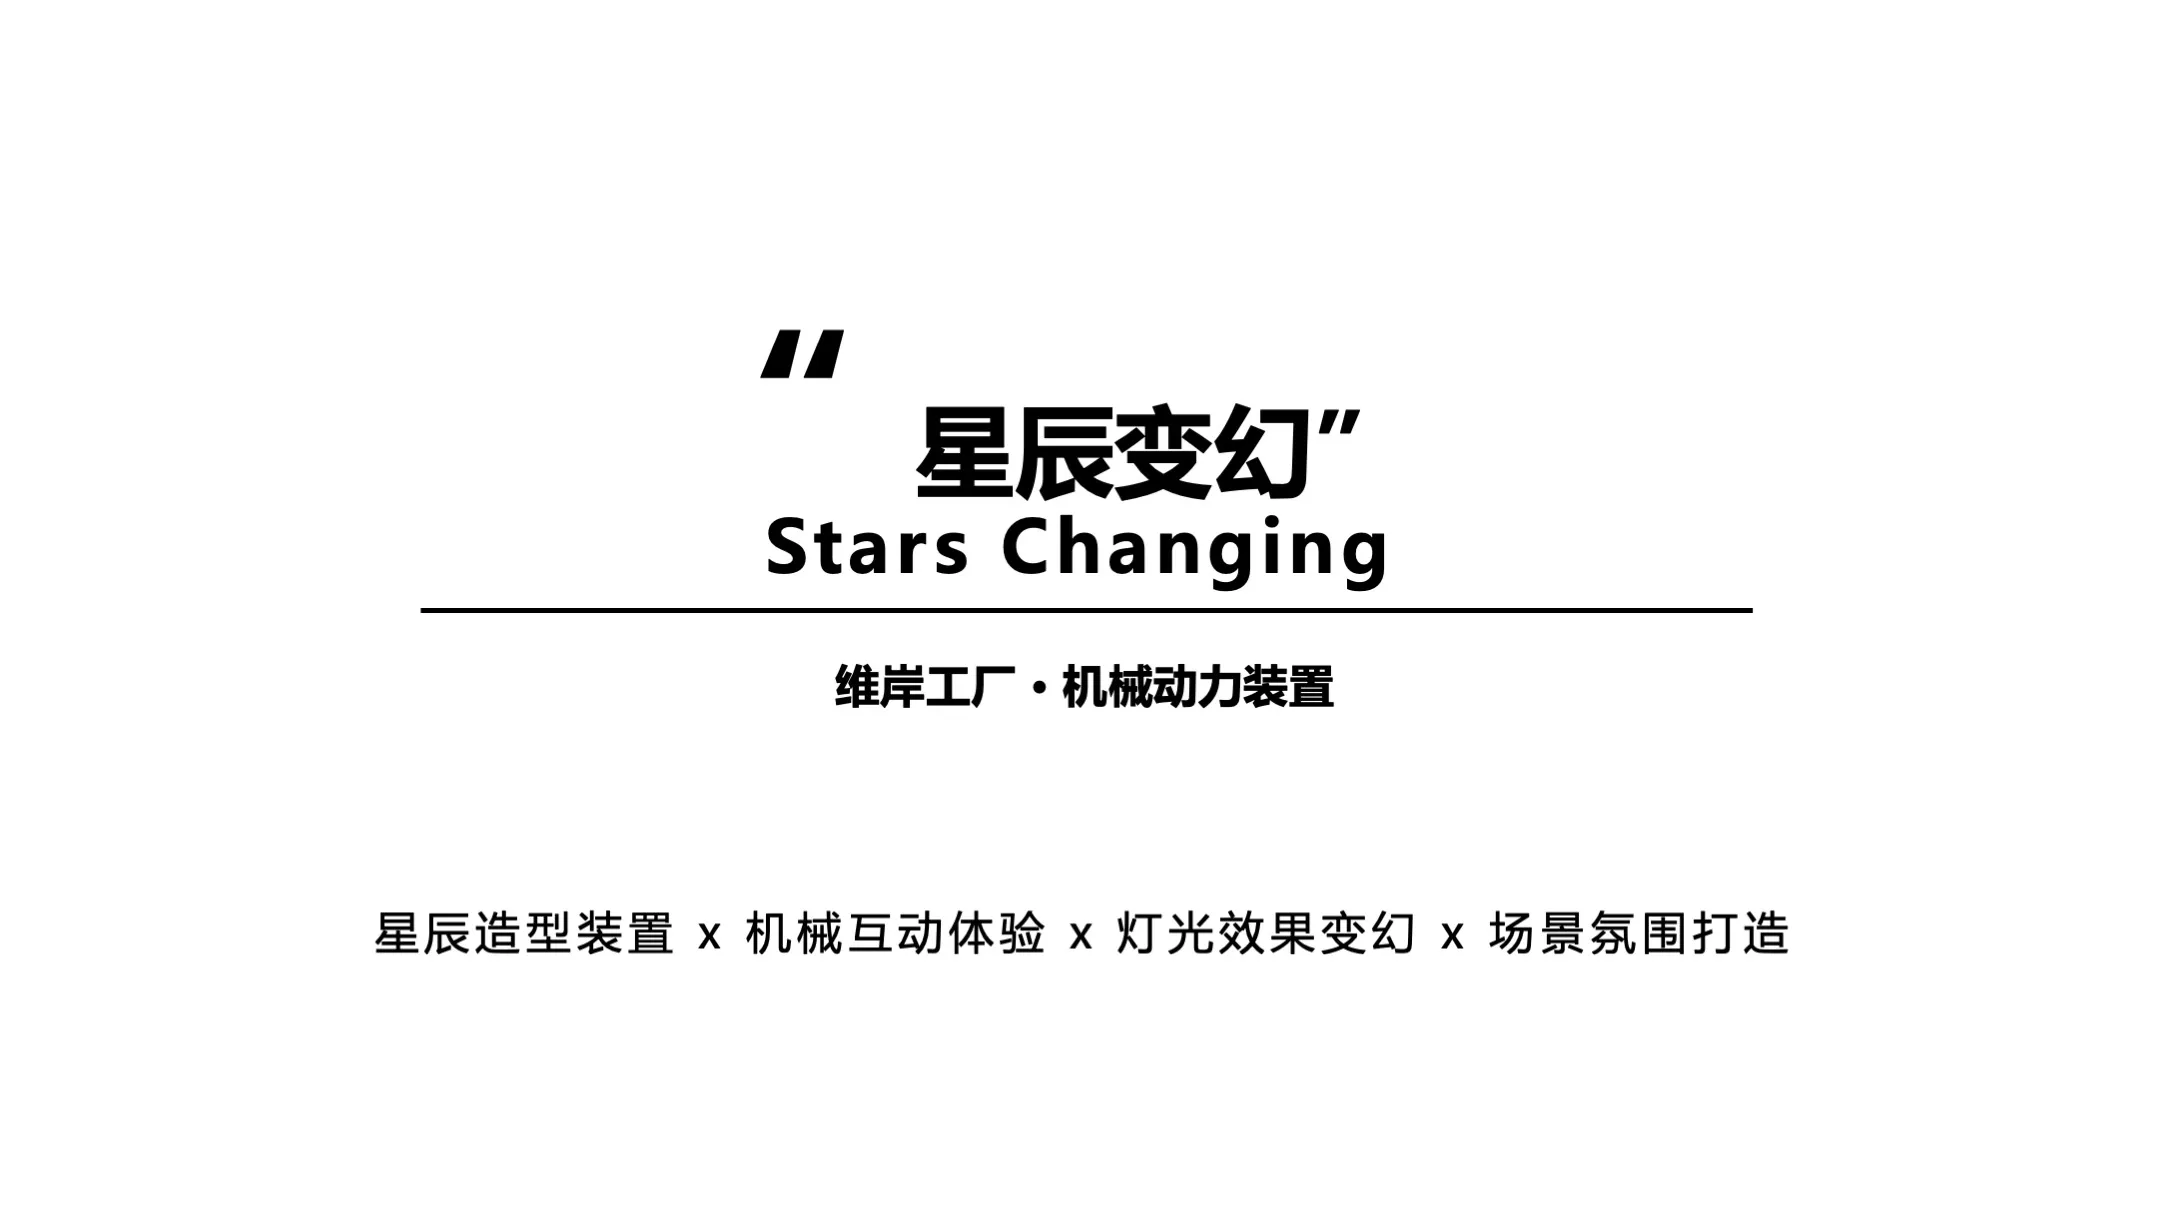 【星辰变幻】Stars Changing机械动力装置